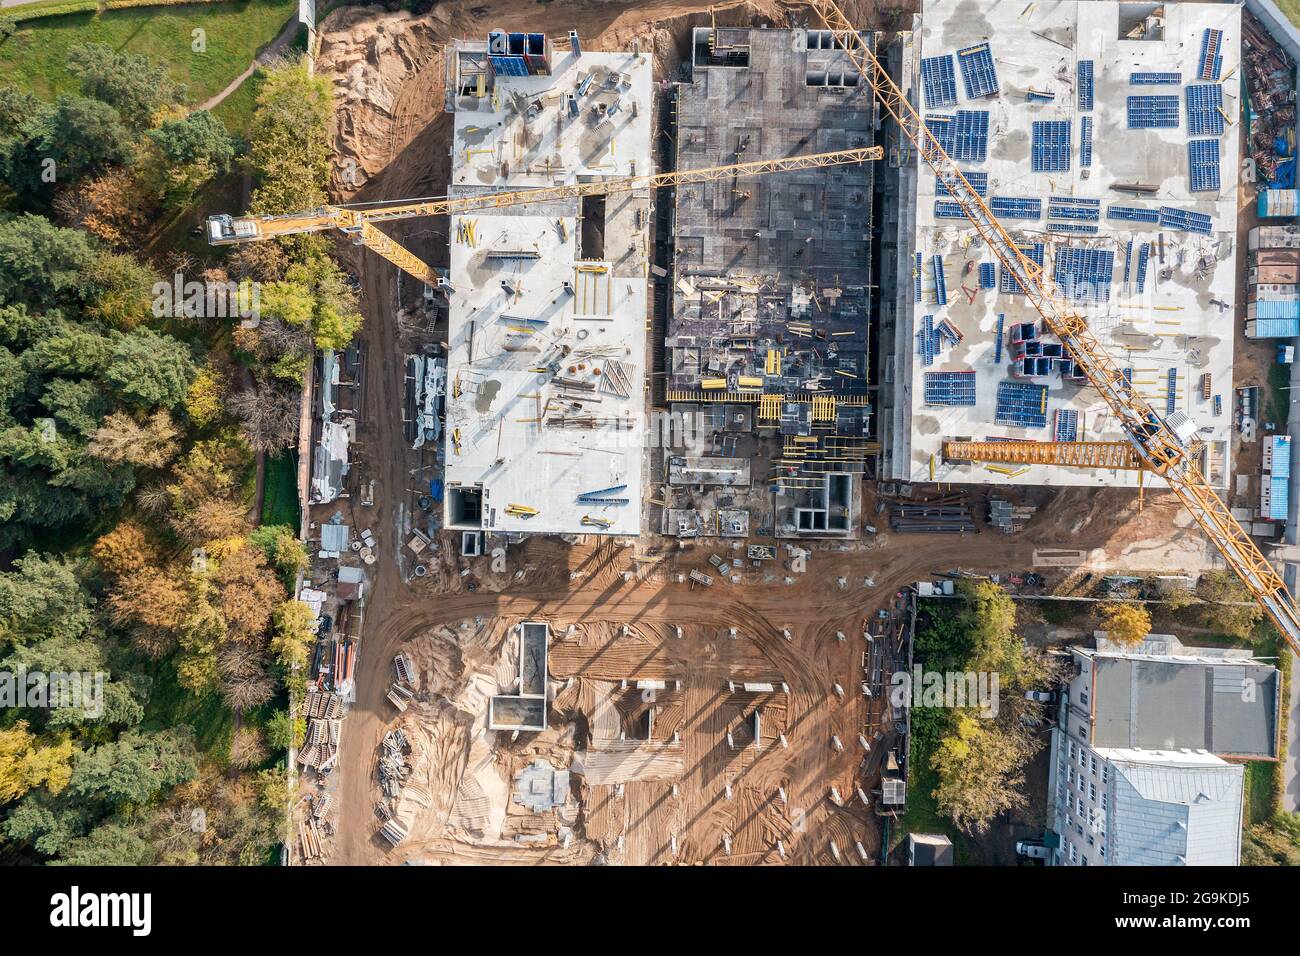 Luftaufnahme von oben auf der Baustelle mit Baumaschinen und Arbeitskränen Stockfoto